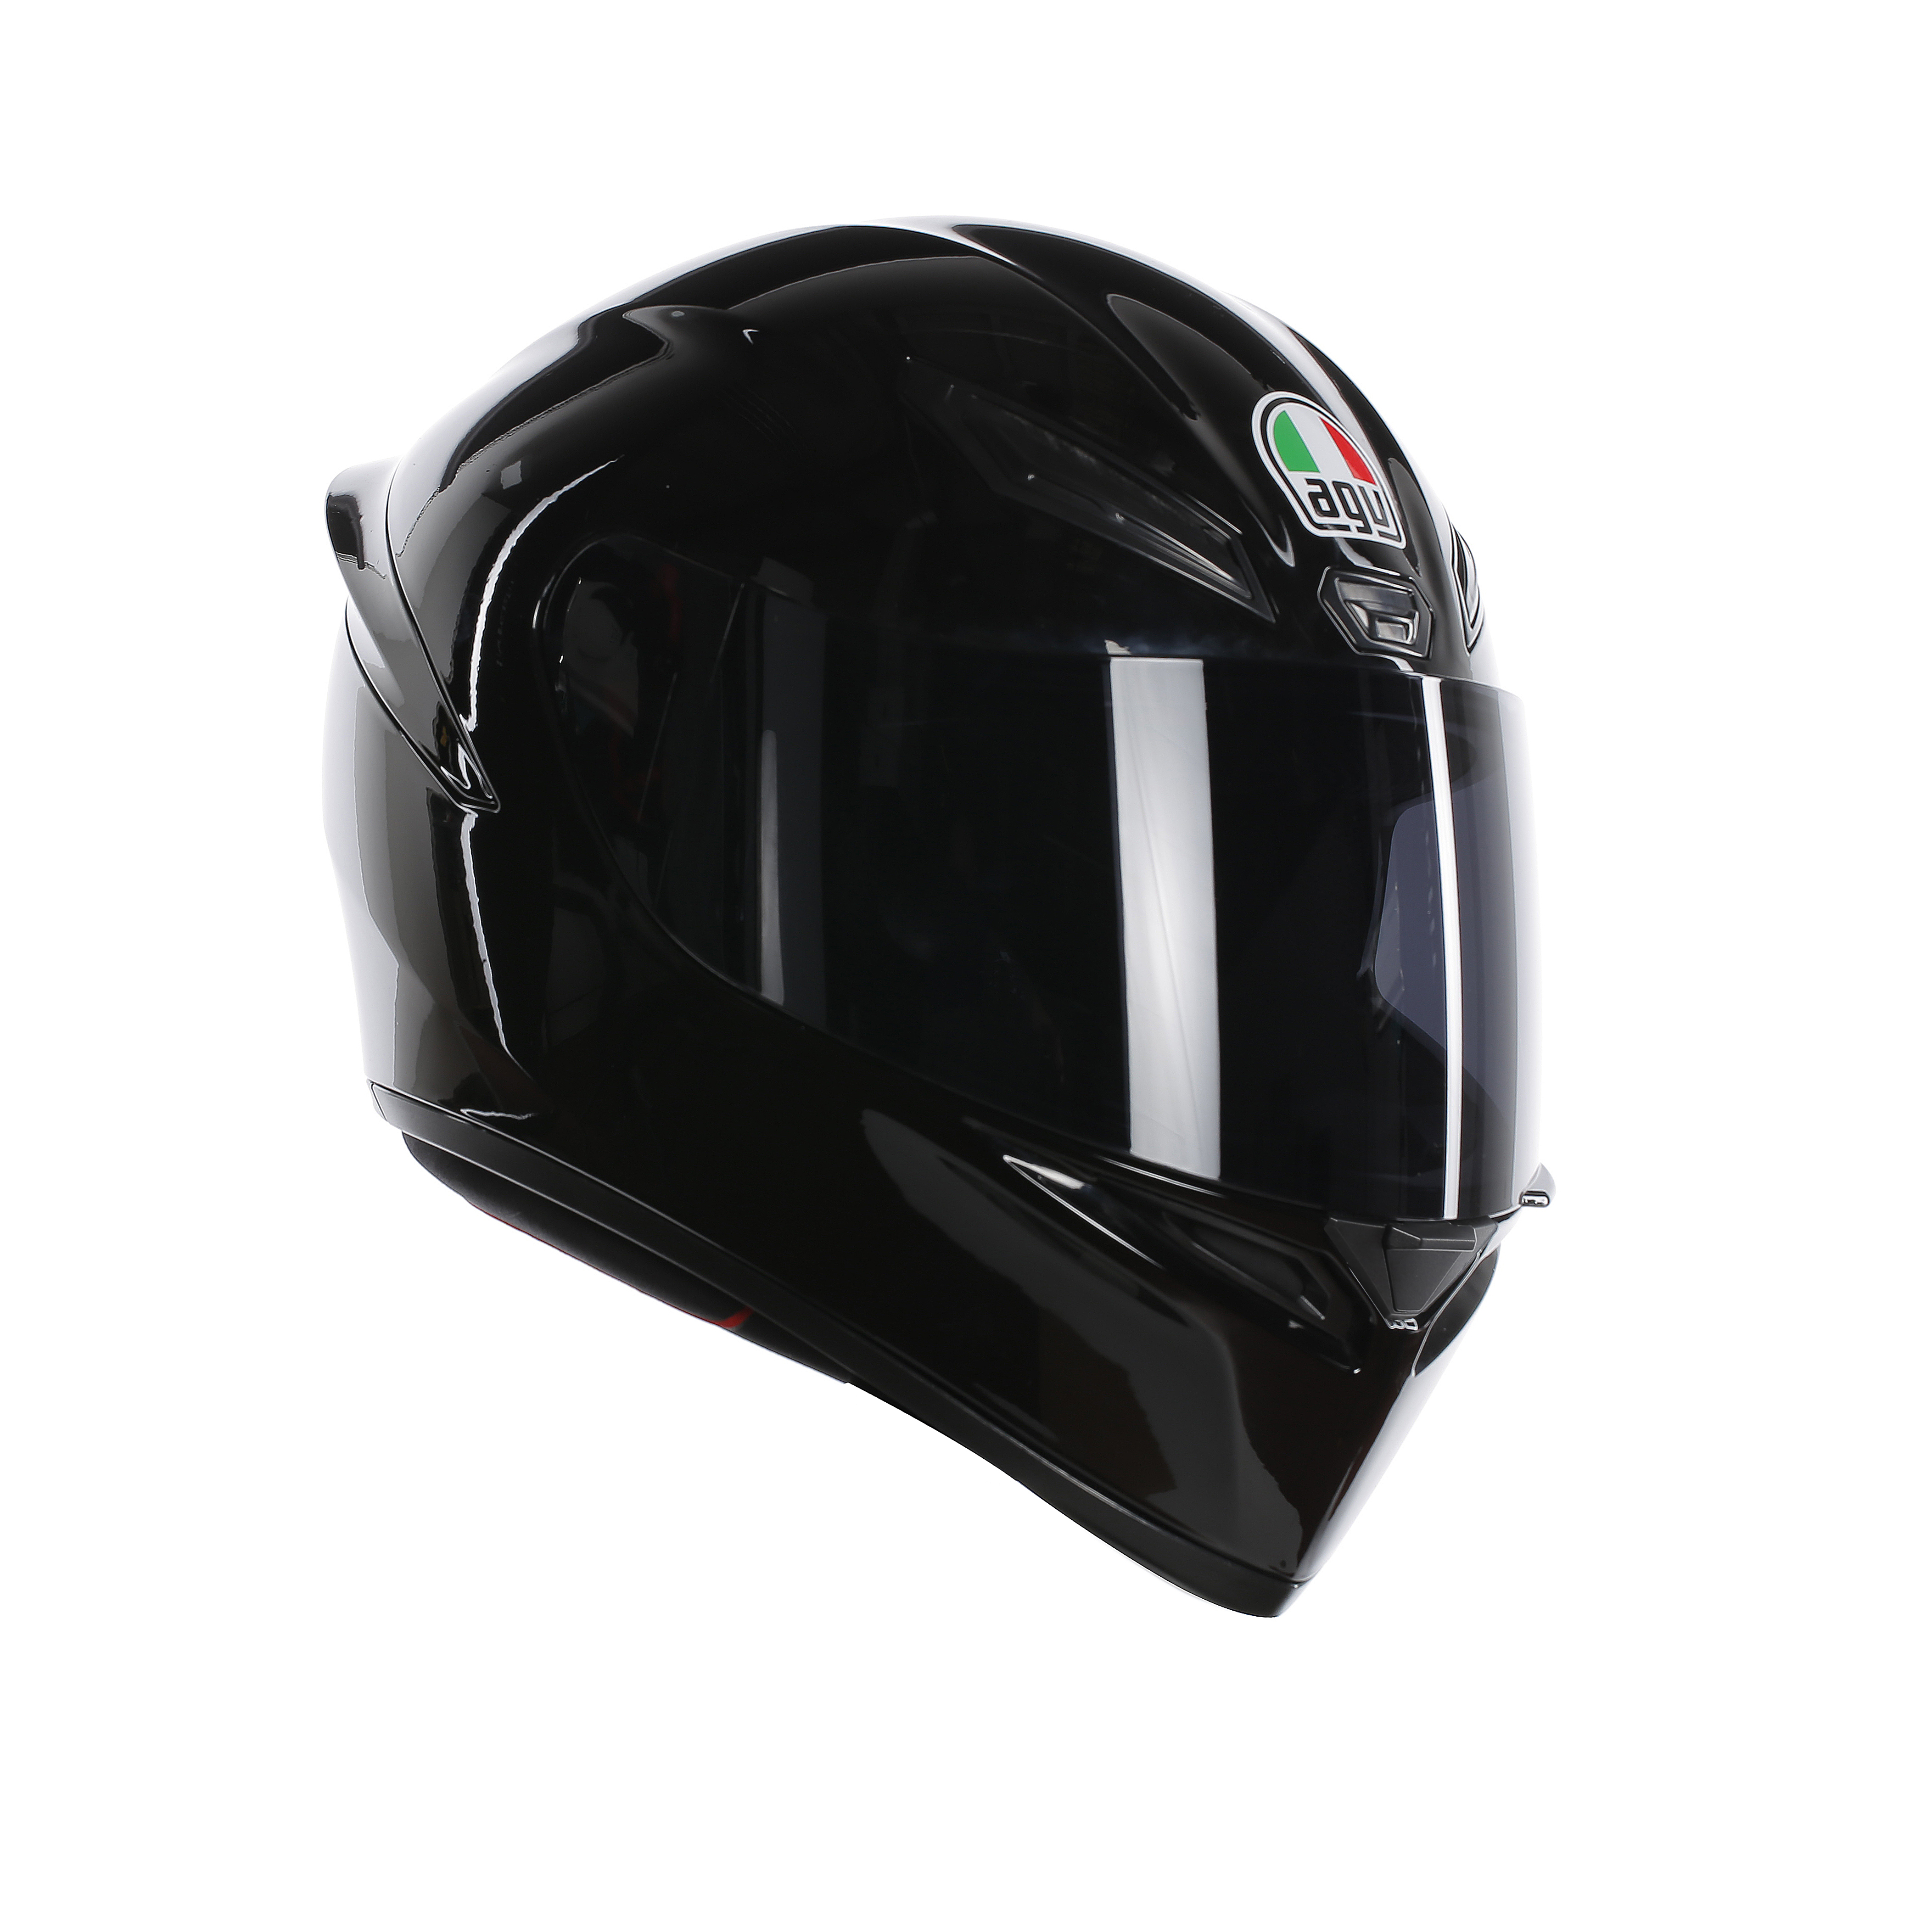 https://www.twowheel.co.uk/news/wp-content/uploads/2018/03/agv-k1-gloss-black-helmet.jpg